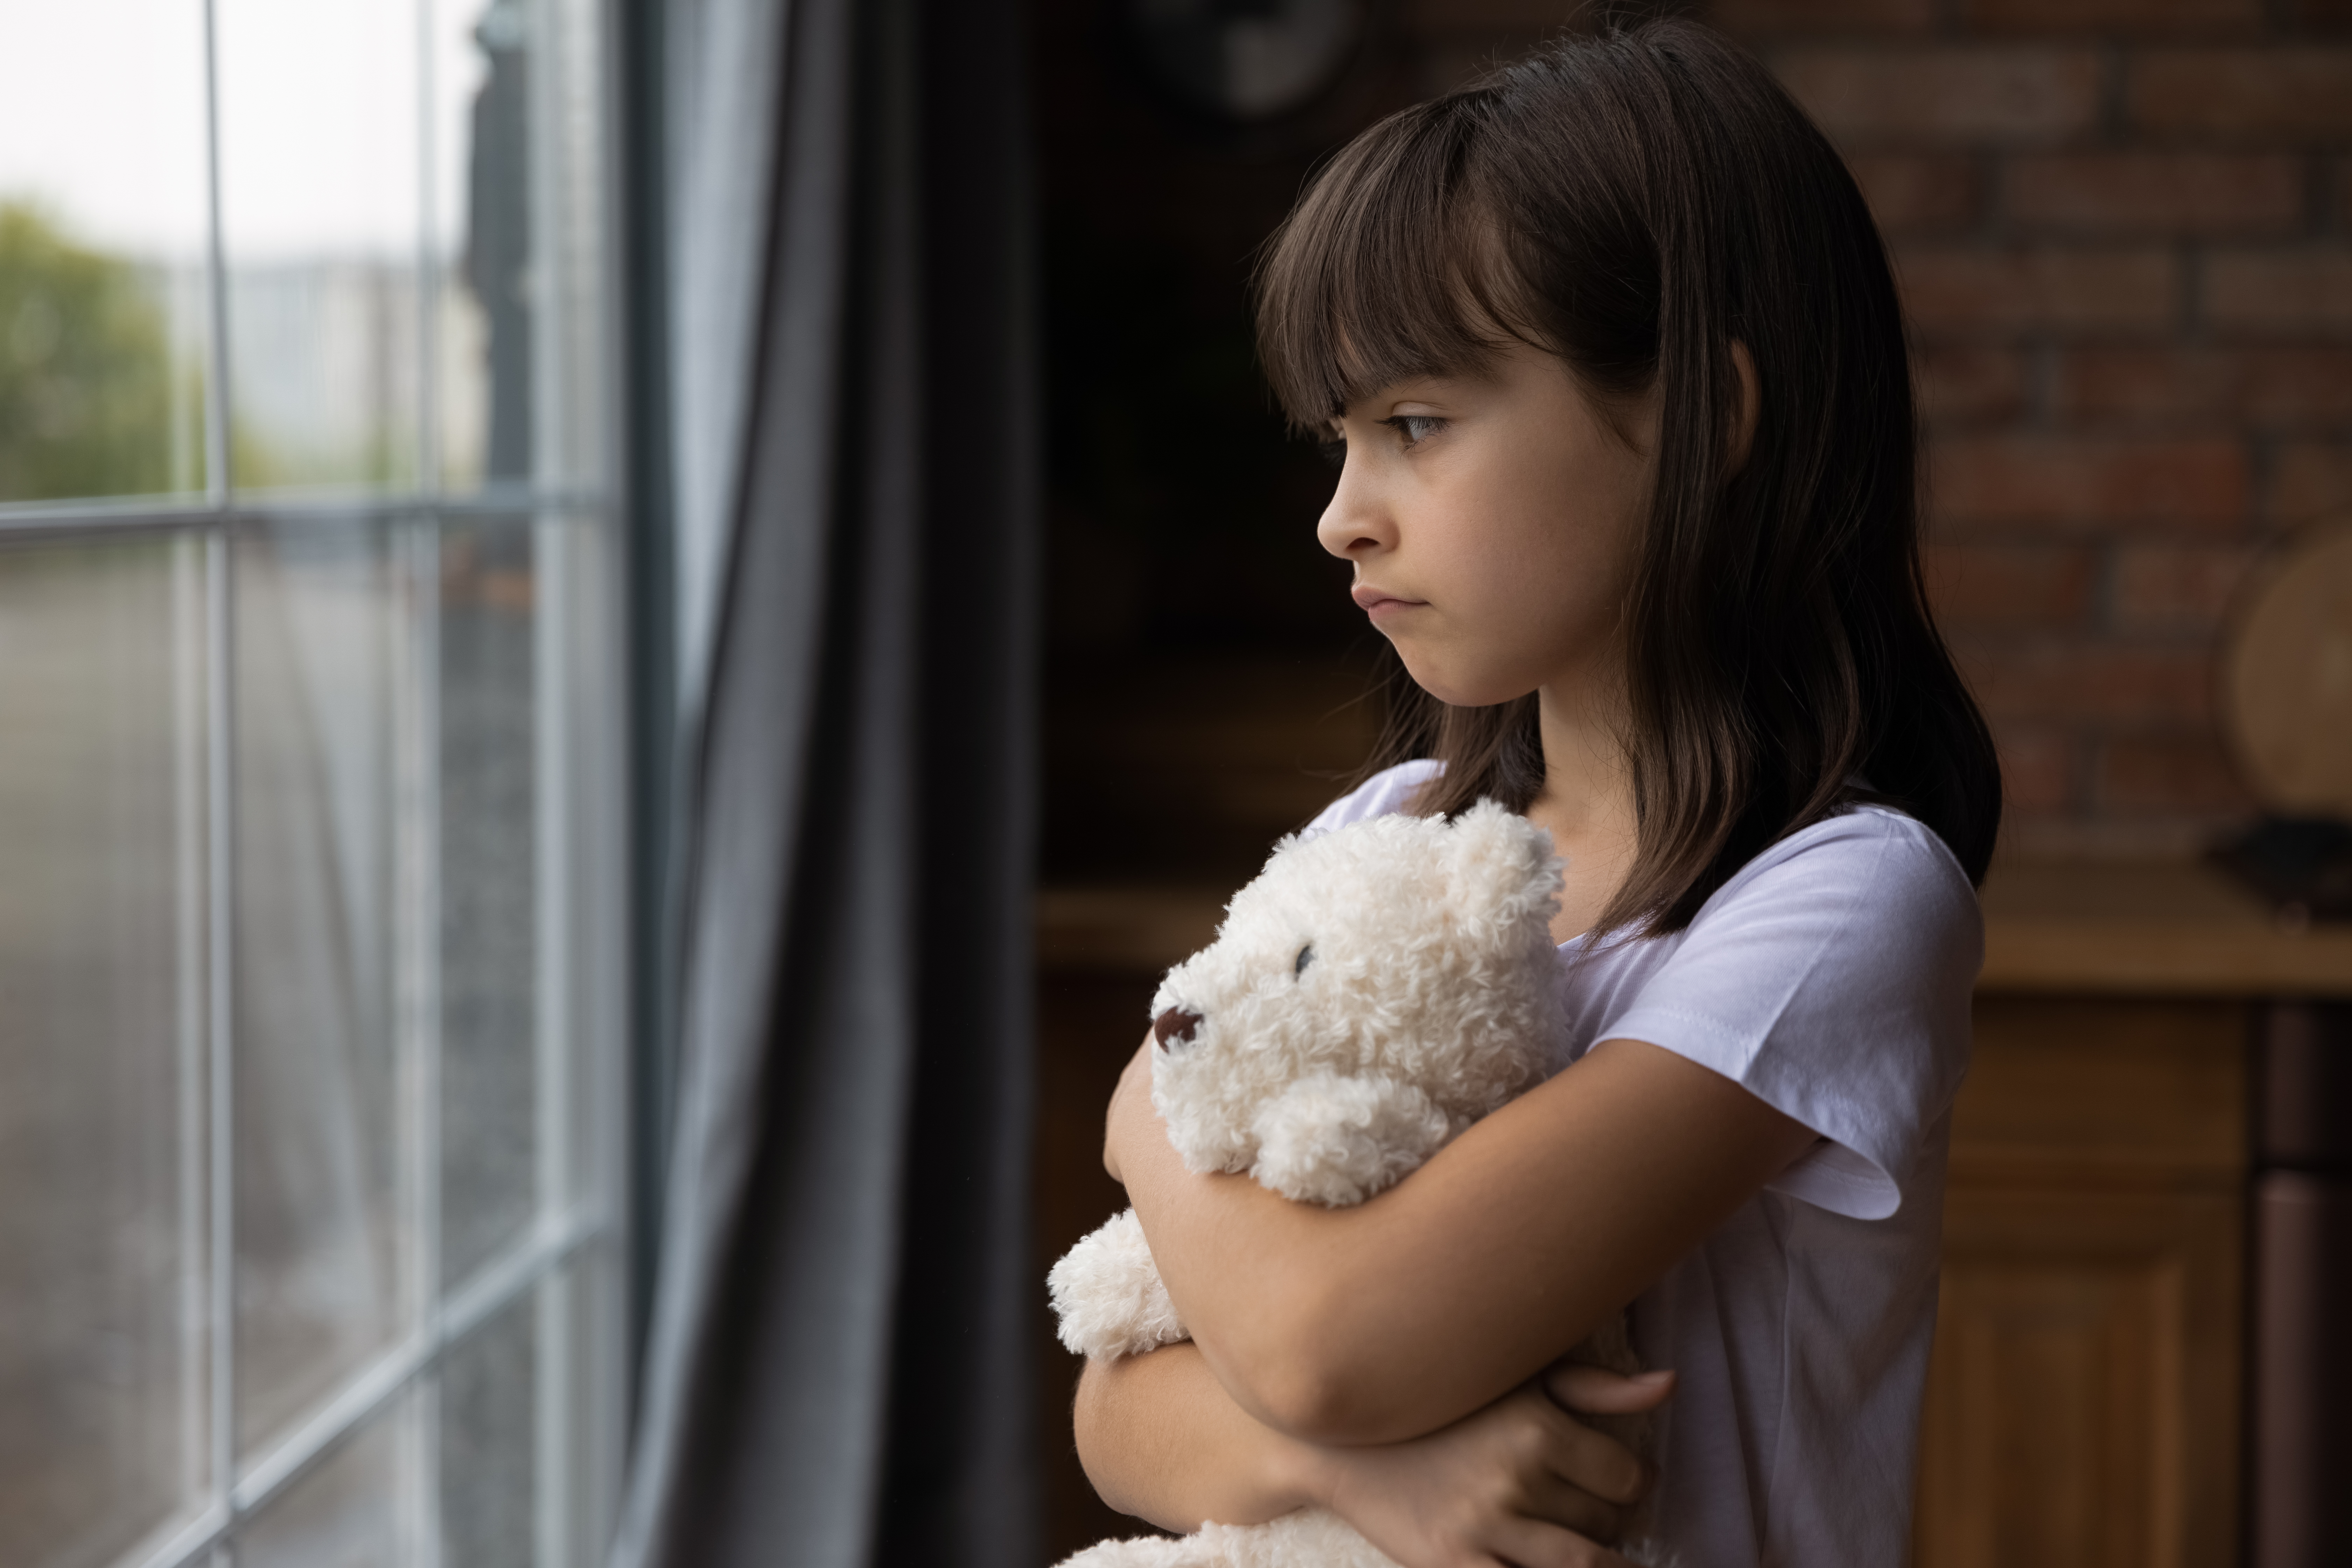 Una niña mirando por la ventana mientras abraza un juguete. | Foto: Shutterstock